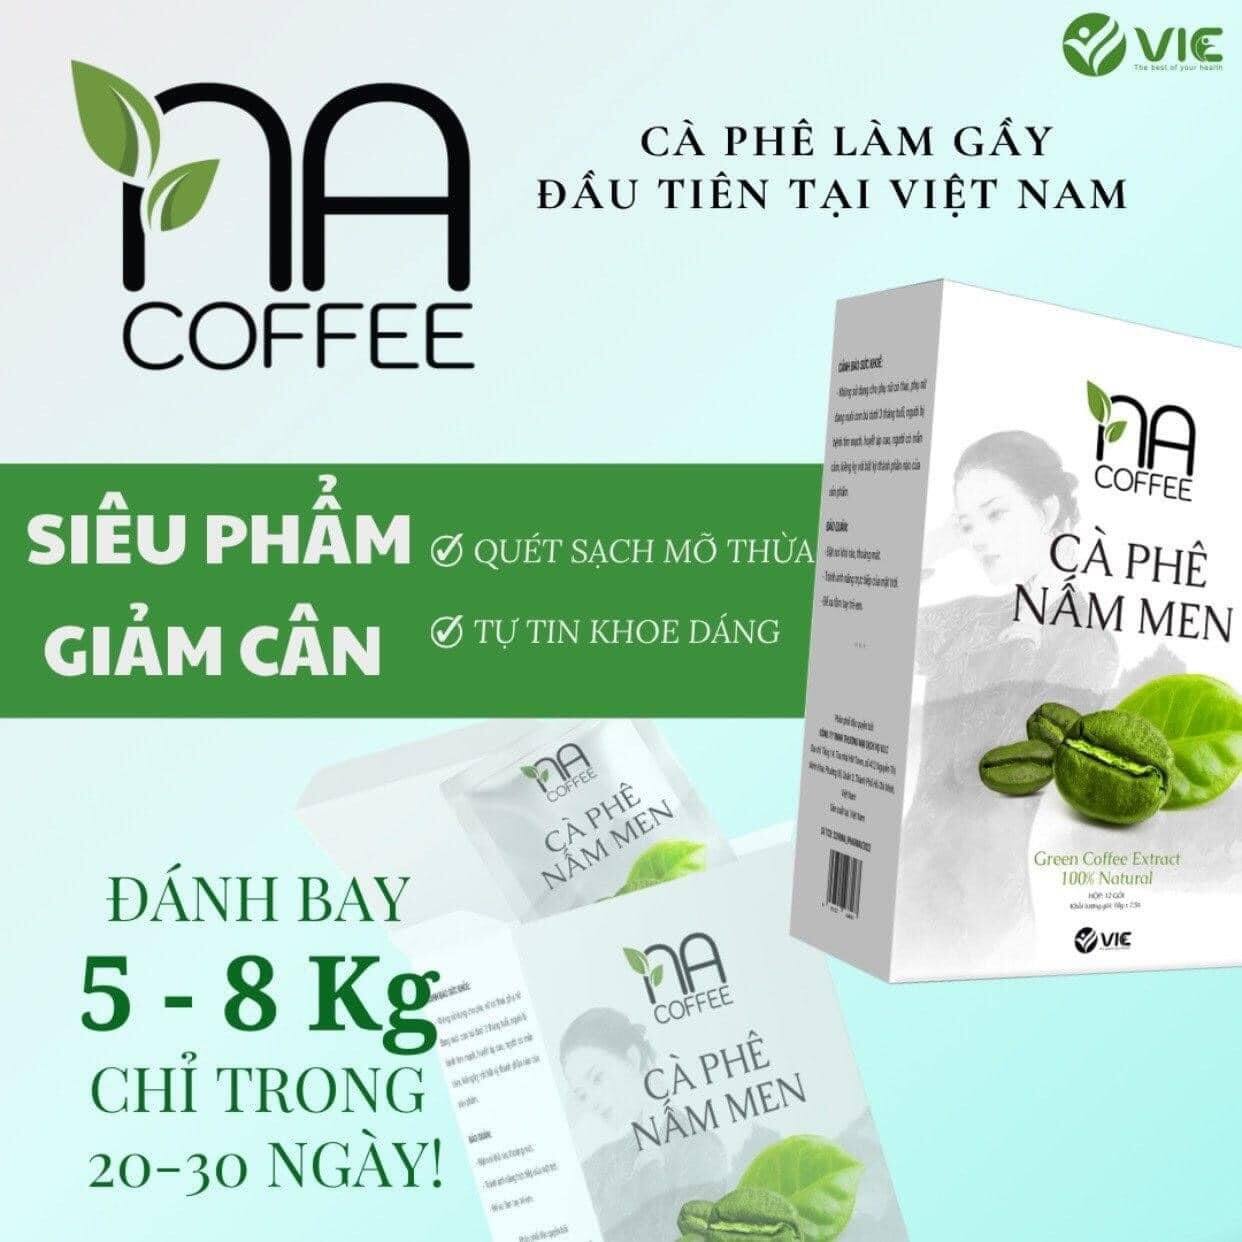 Cà Phê Nấm Men Làm Gầy Na Coffee VIC Organic 1 hộp 12 gói